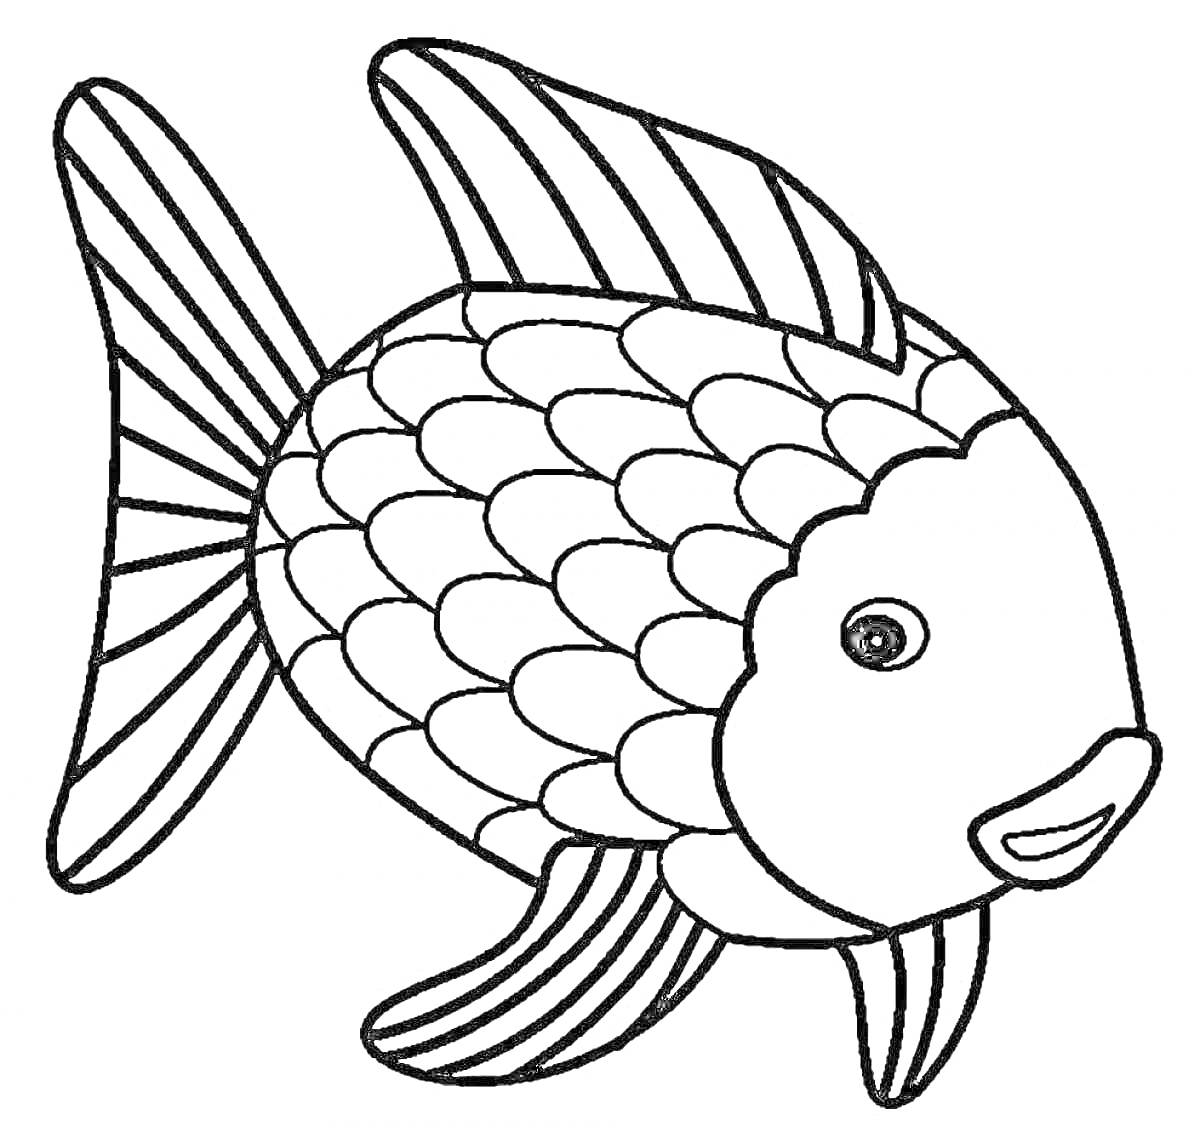 Раскраска Большая рыбка с чешуйками, плавниками и хвостом